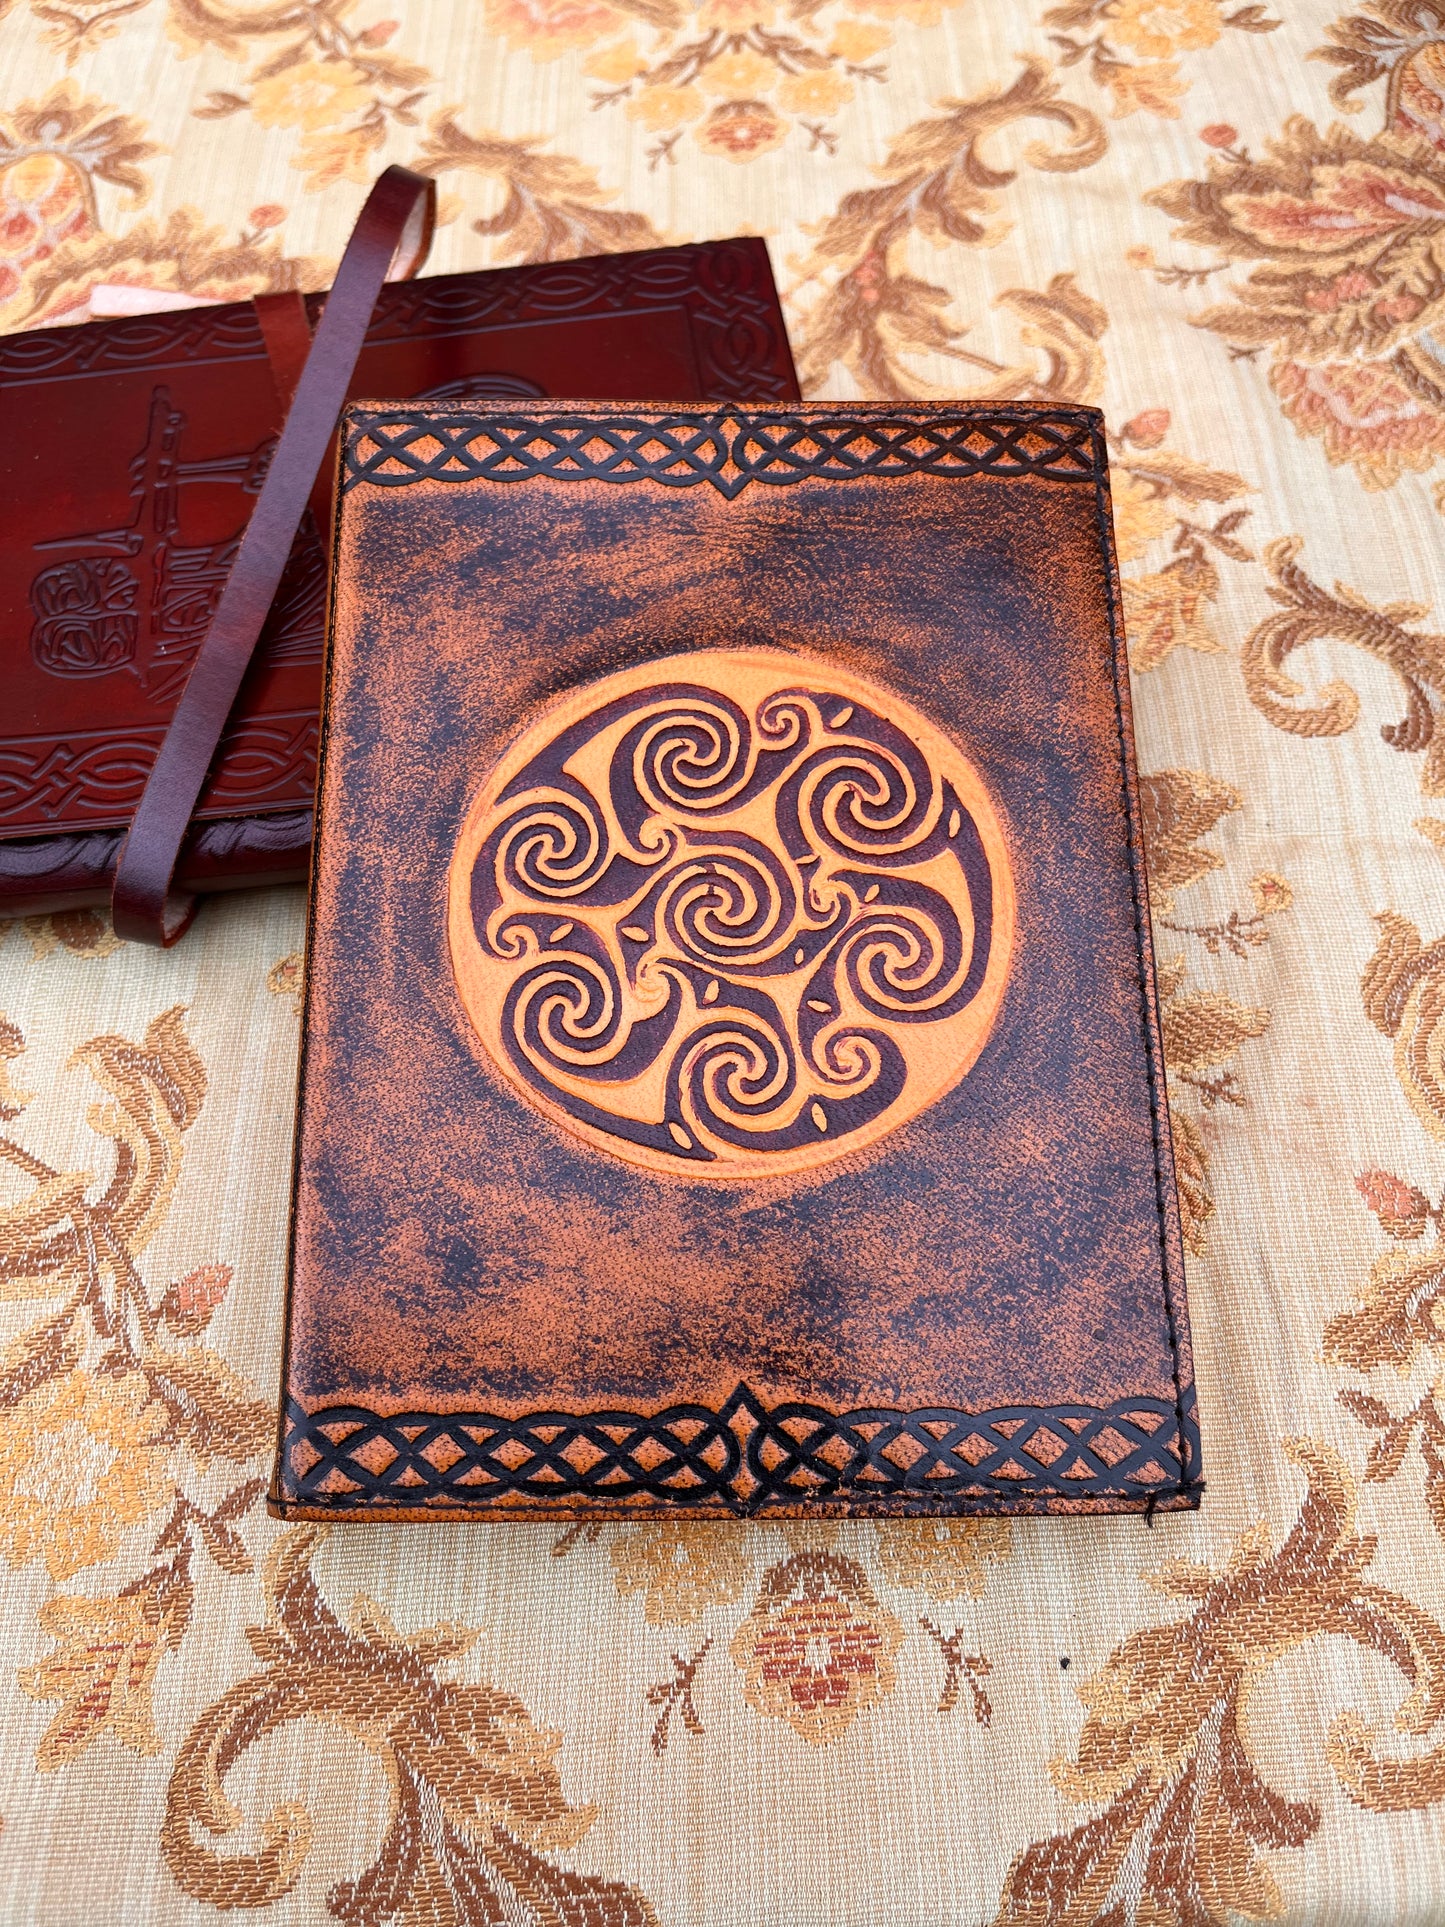 Journal à spirale celtique en cuir marron